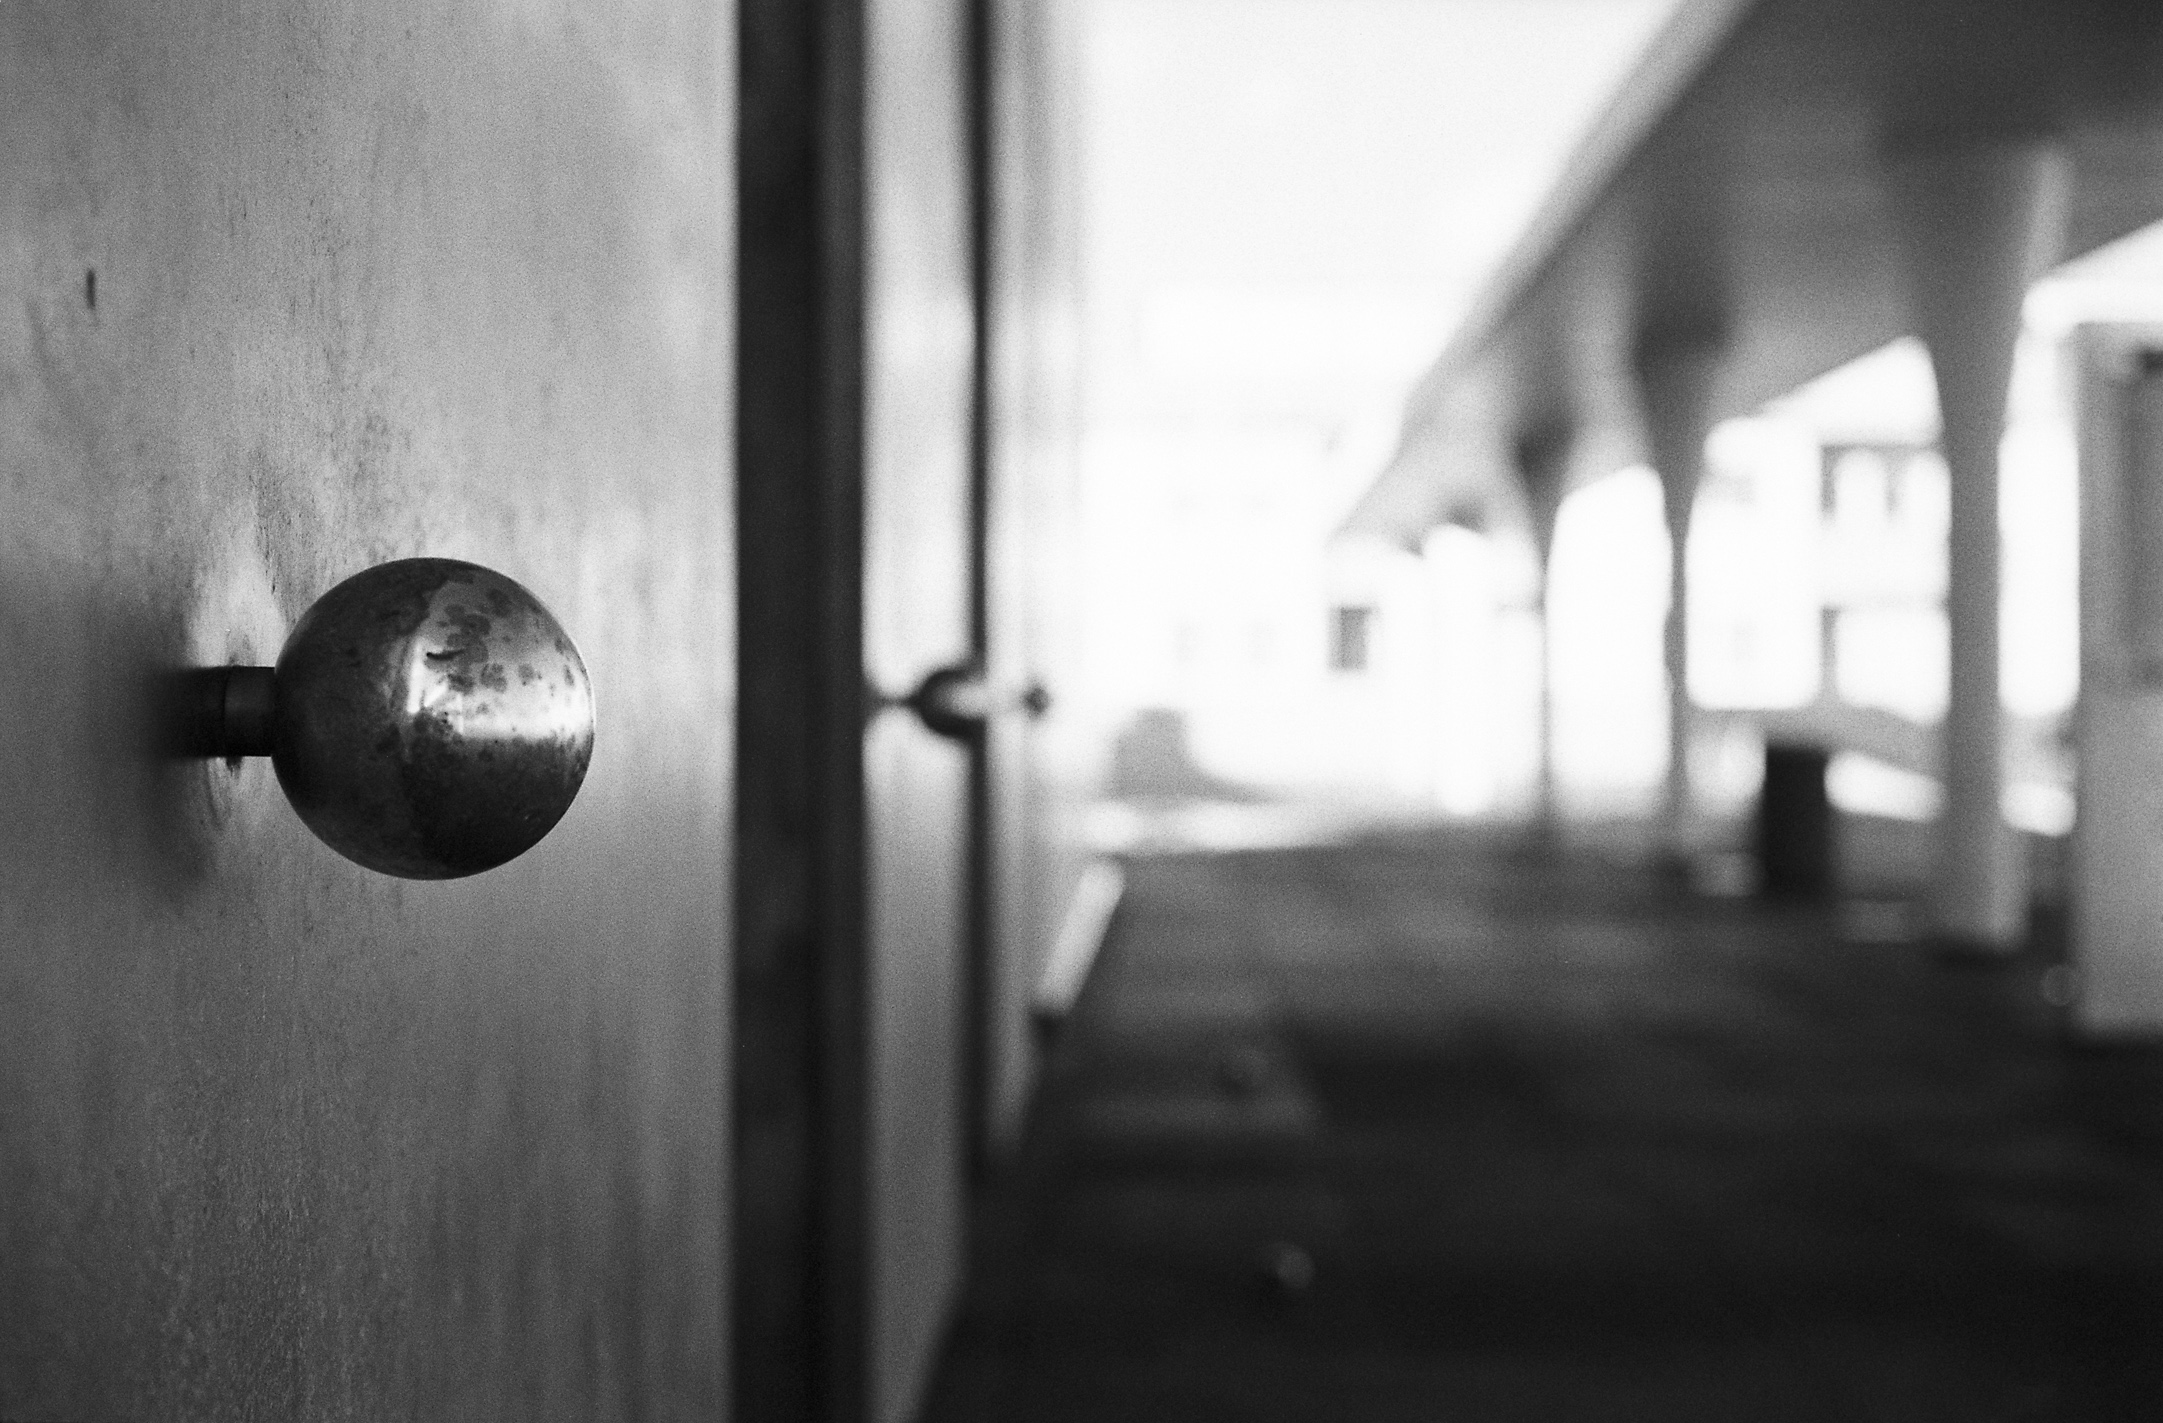 the door handle on a wooden building is shown